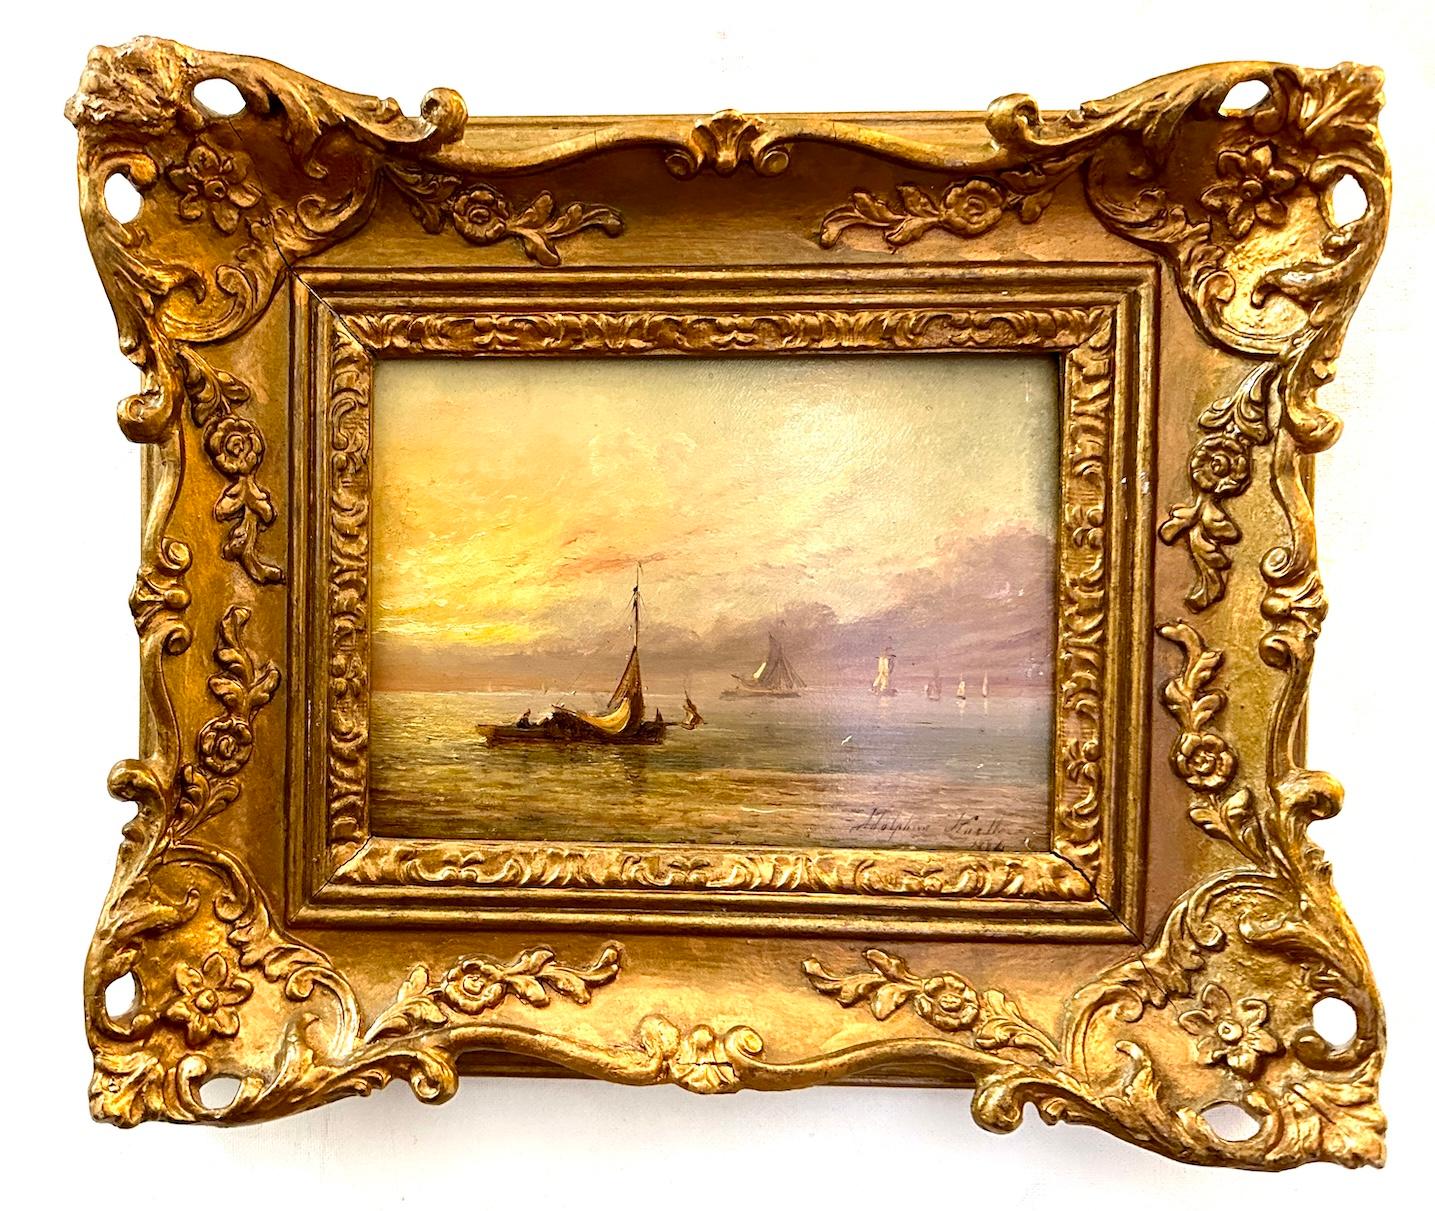 Landscape Painting Adolphus Knell - Bateau de pêche anglais du 19e siècle en mer avec lever ou coucher de soleil